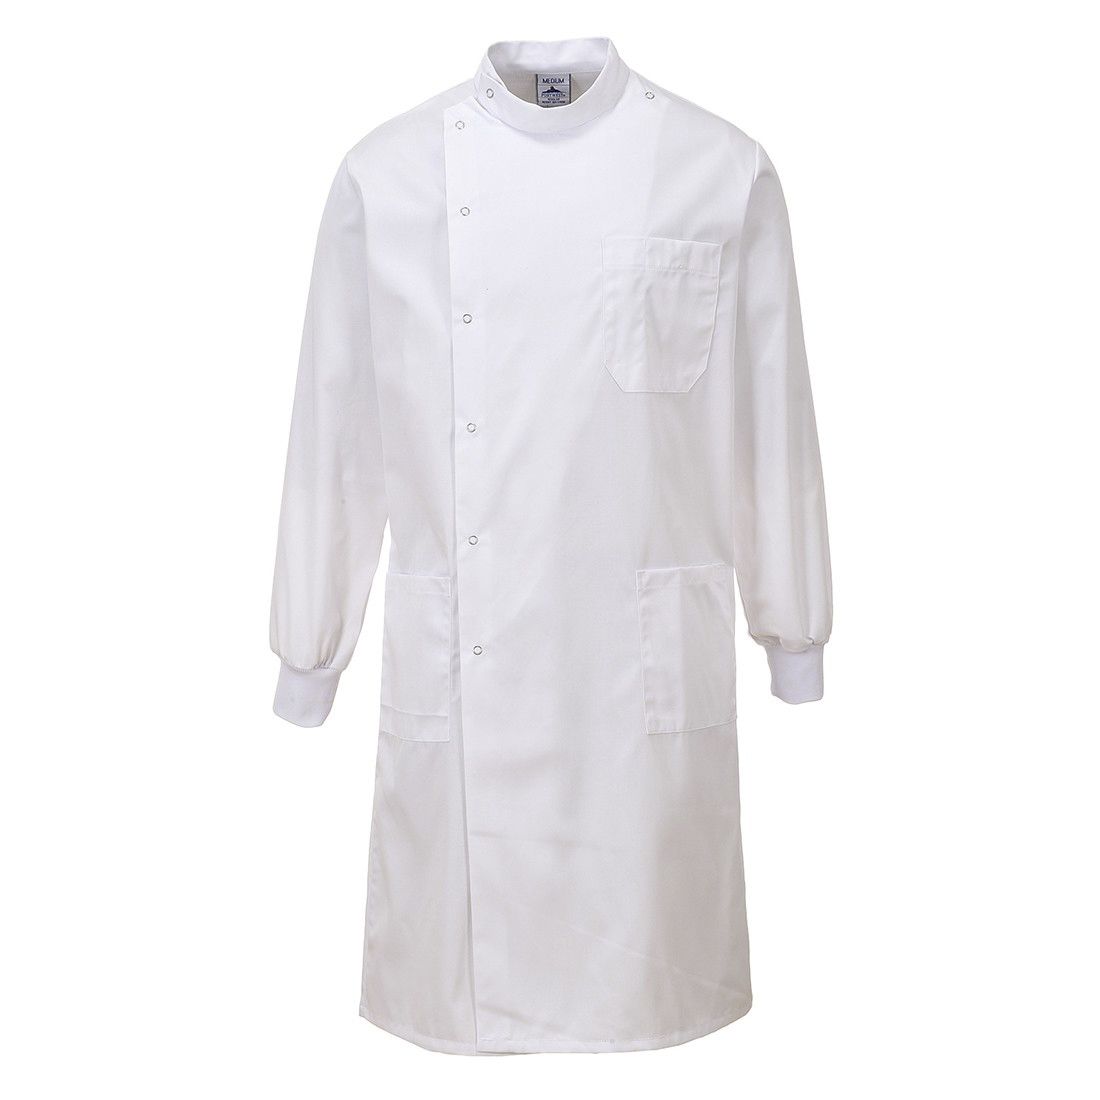 RS PRO White Men Reusable Lab Coat, L